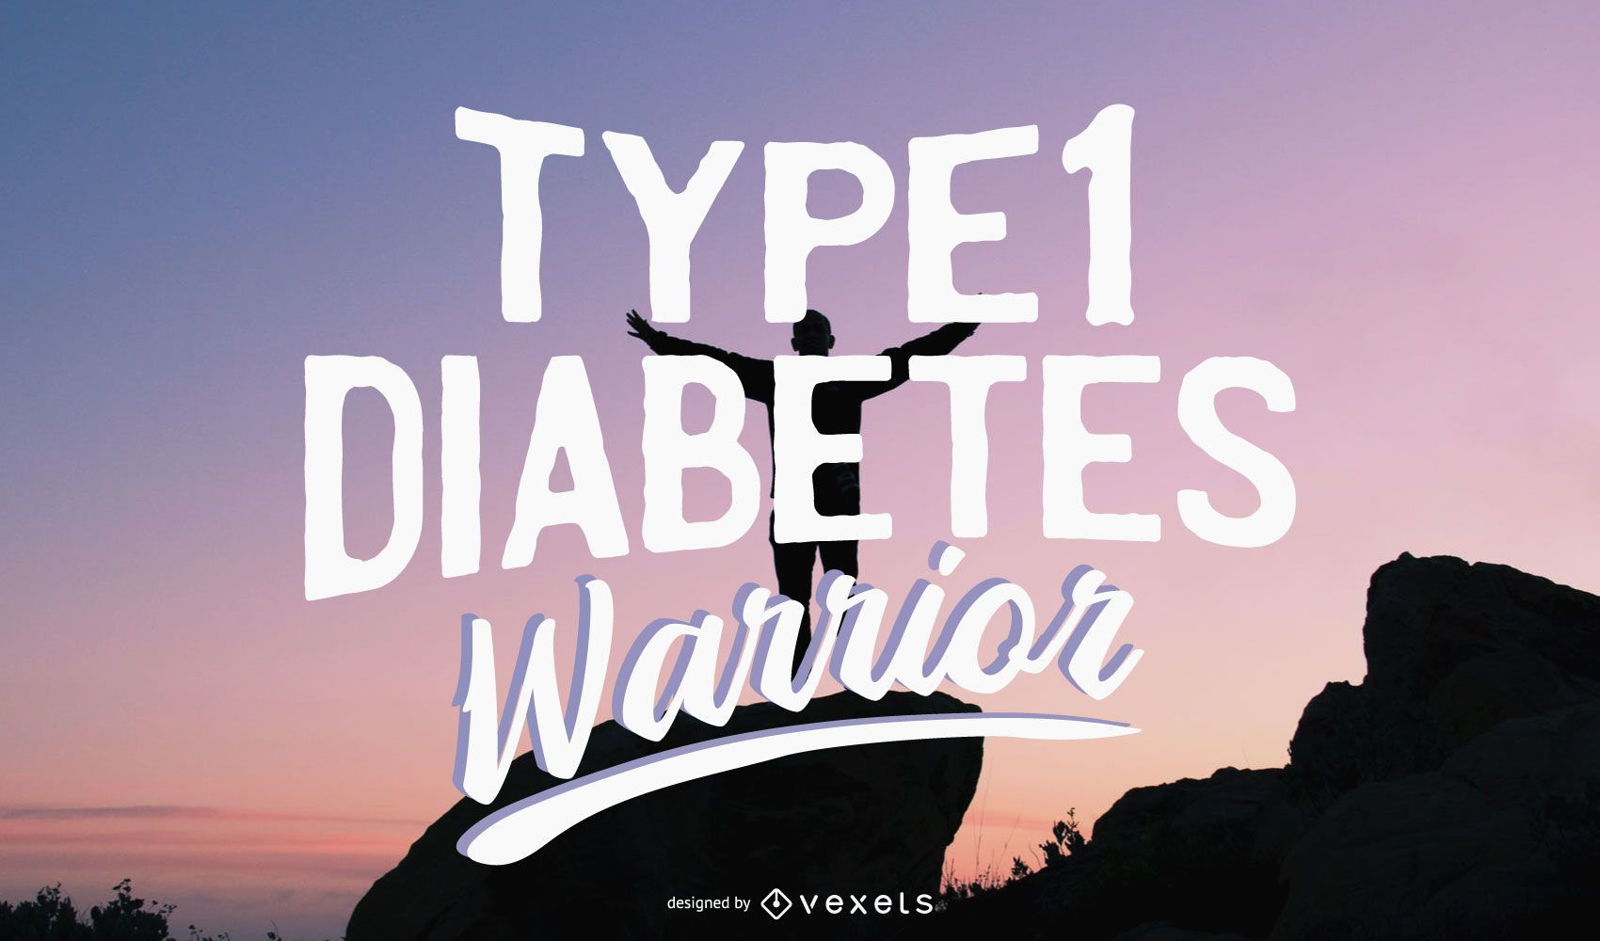 Ilustración del guerrero de la diabetes tipo 1